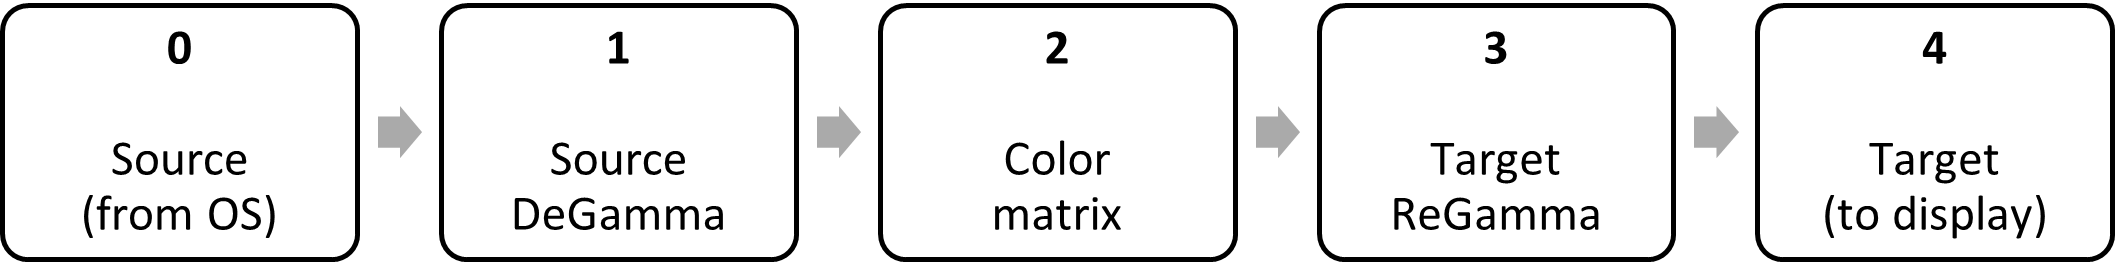 diagramme de blocs : degamma source, matrice de couleurs, regamma cible